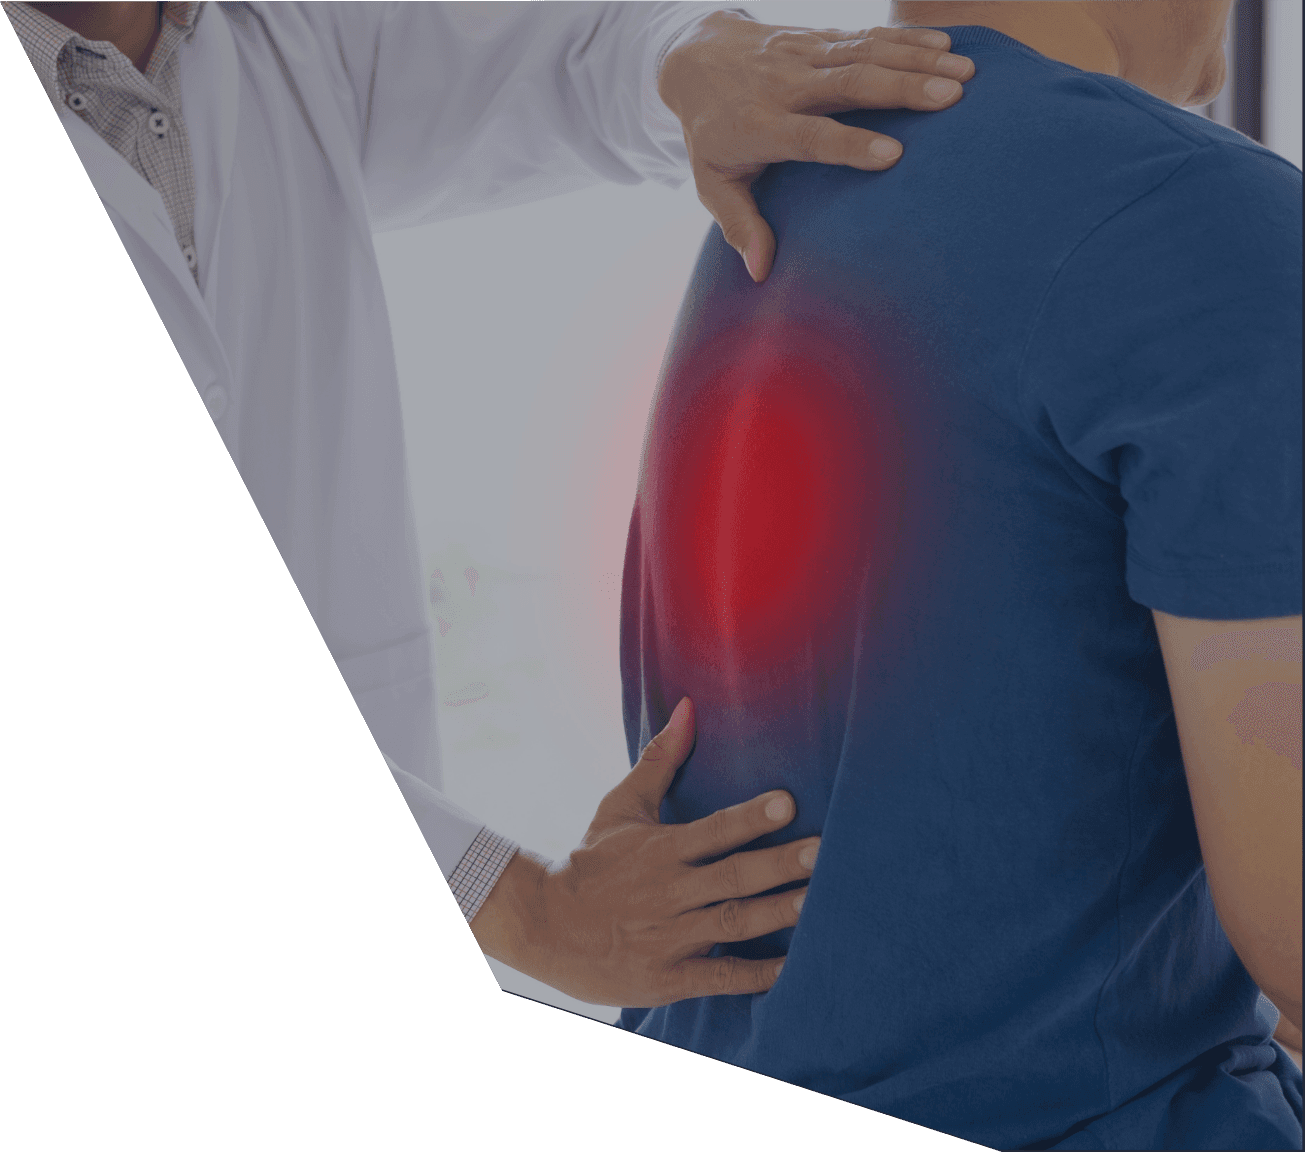 Czerwona grafika w odcinku piersiowym kręgosłupa pacjenta symbolizuje źródło bólu.